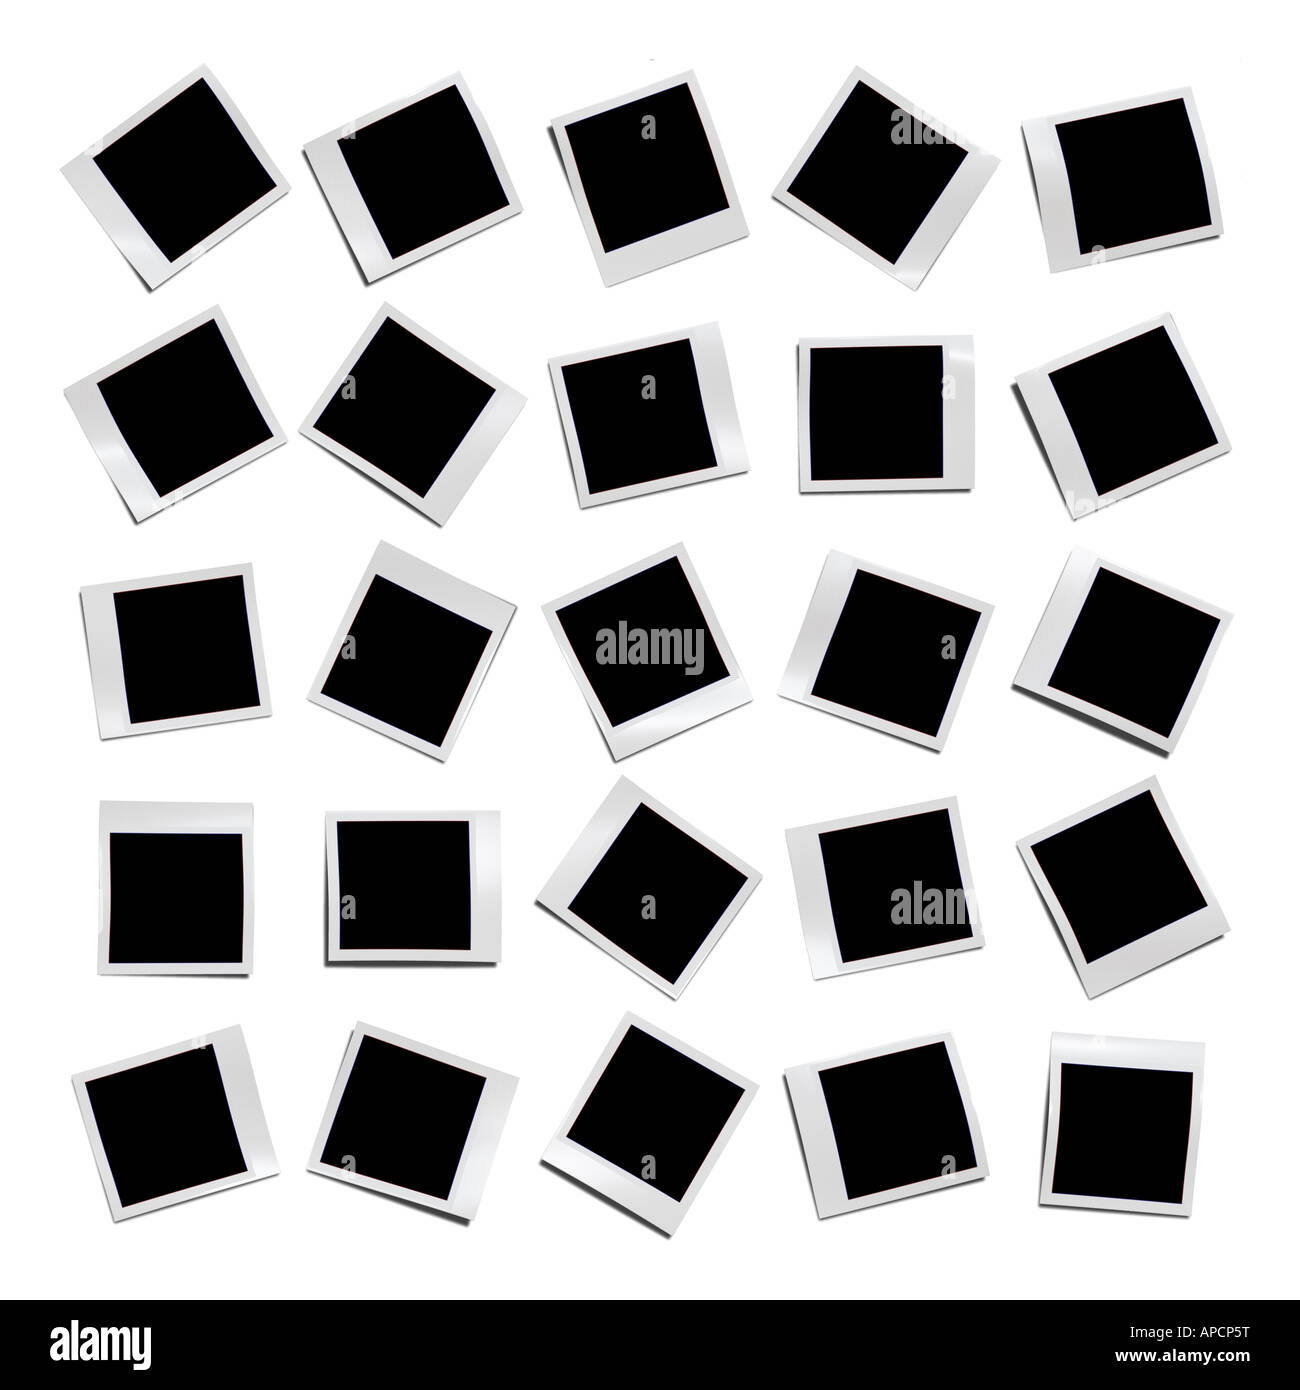 Polaroid Black and White Stock Photos & Images - Alamy